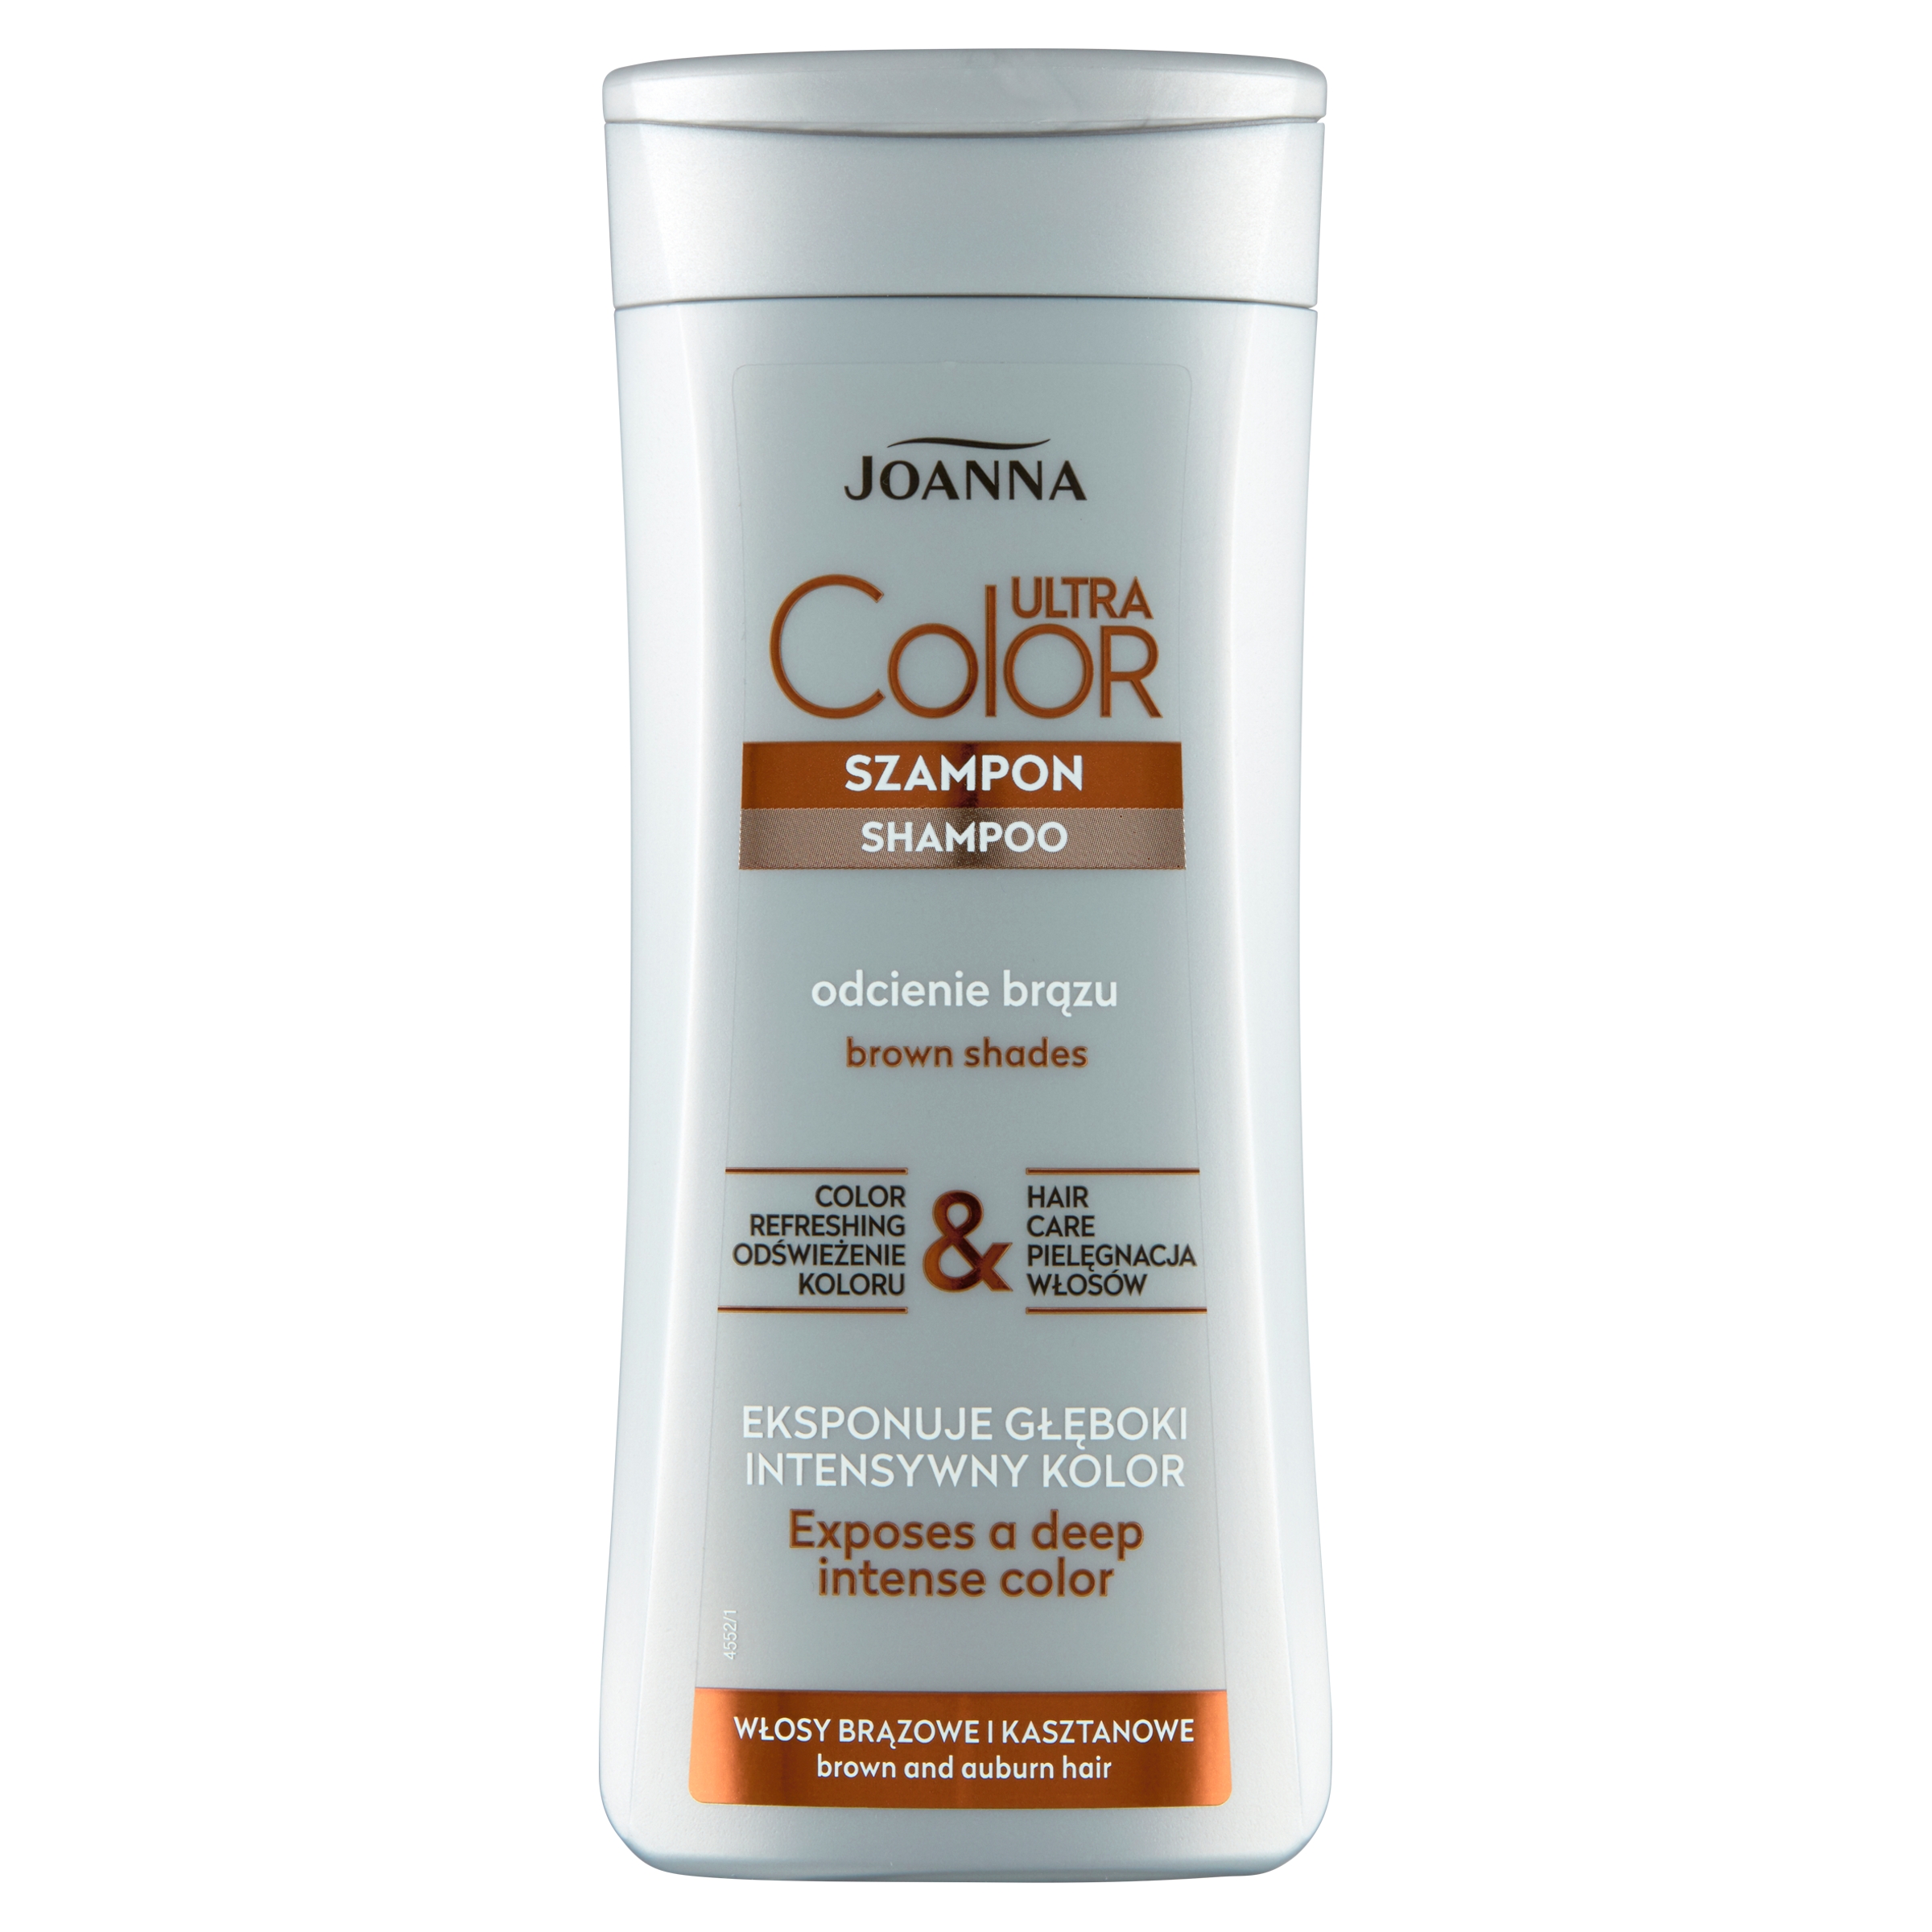 joanna ultra color system szampon do włosów brązowych i kasztanowych